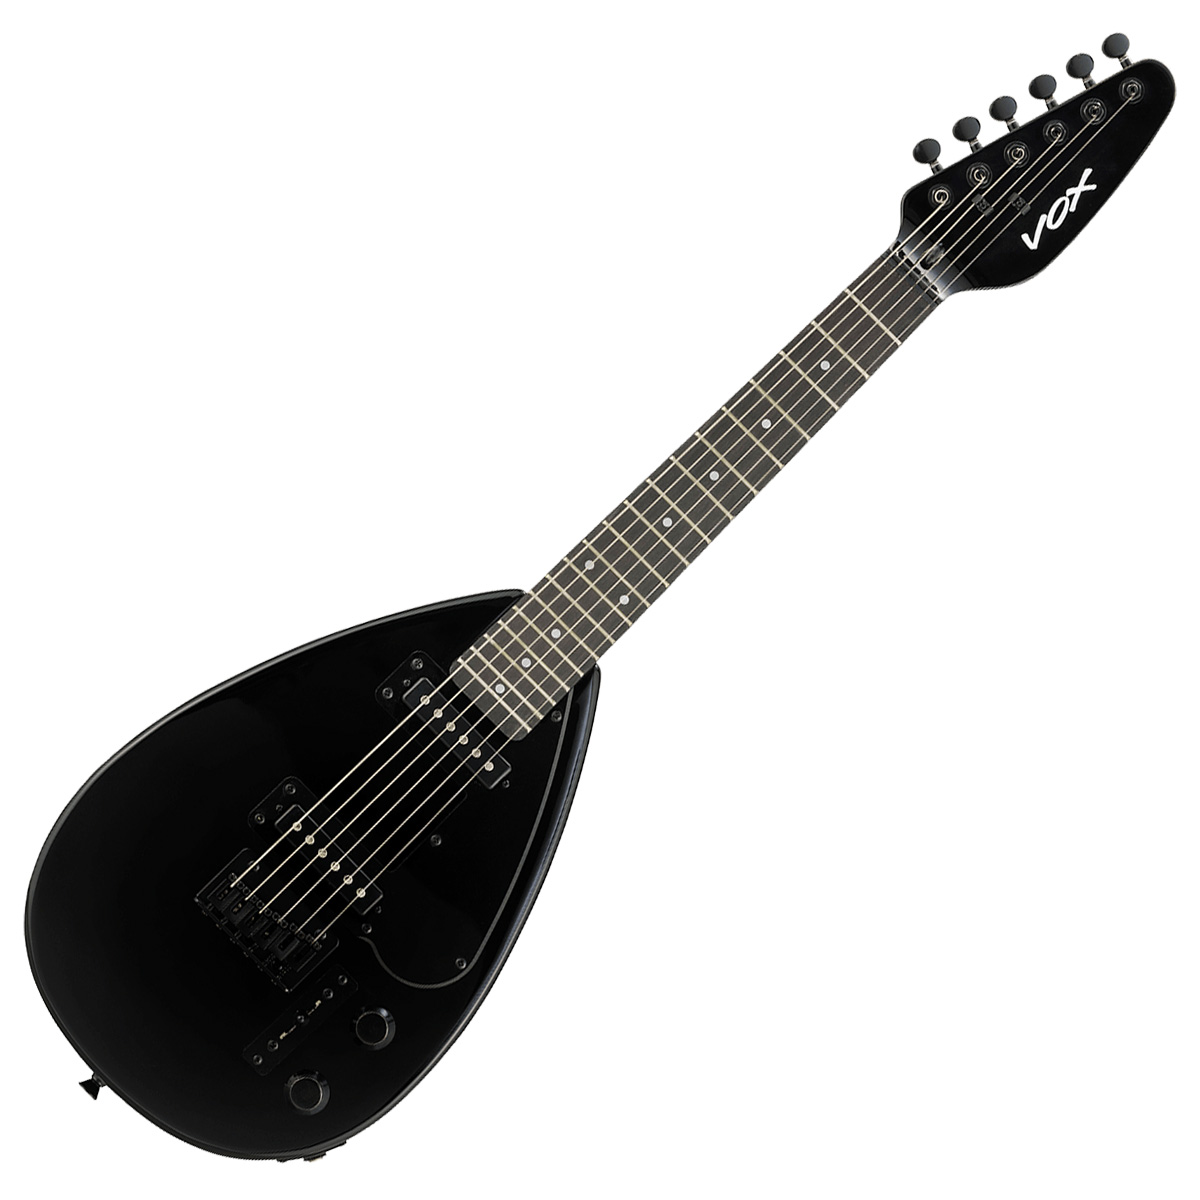 VOX ボックス MK3 MINI ミニギター エレキギター トラベルギター ショートスケール ティアドロップ型